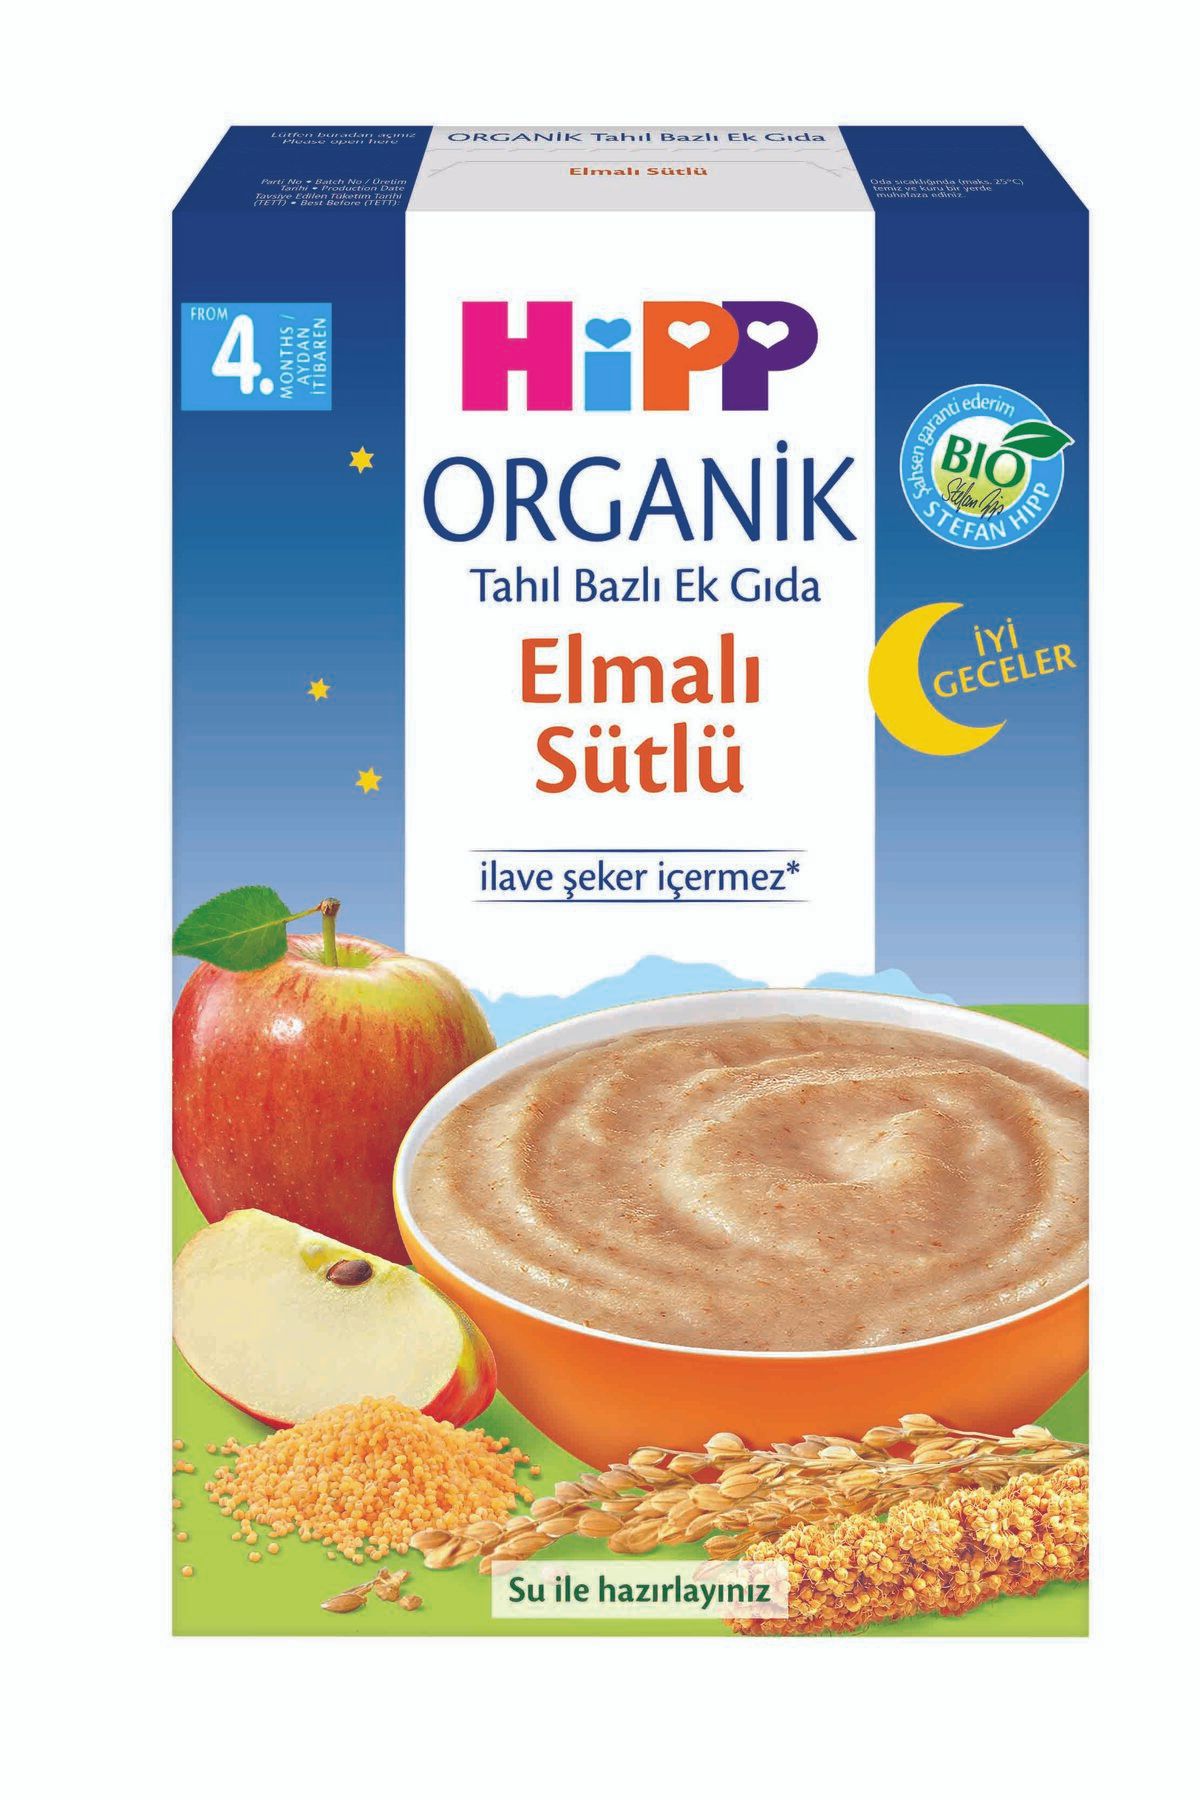 Hipp Organik Iyi Geceler Elmalı Sütlü Tahıl Bazlı Ek Gıda 250 gr